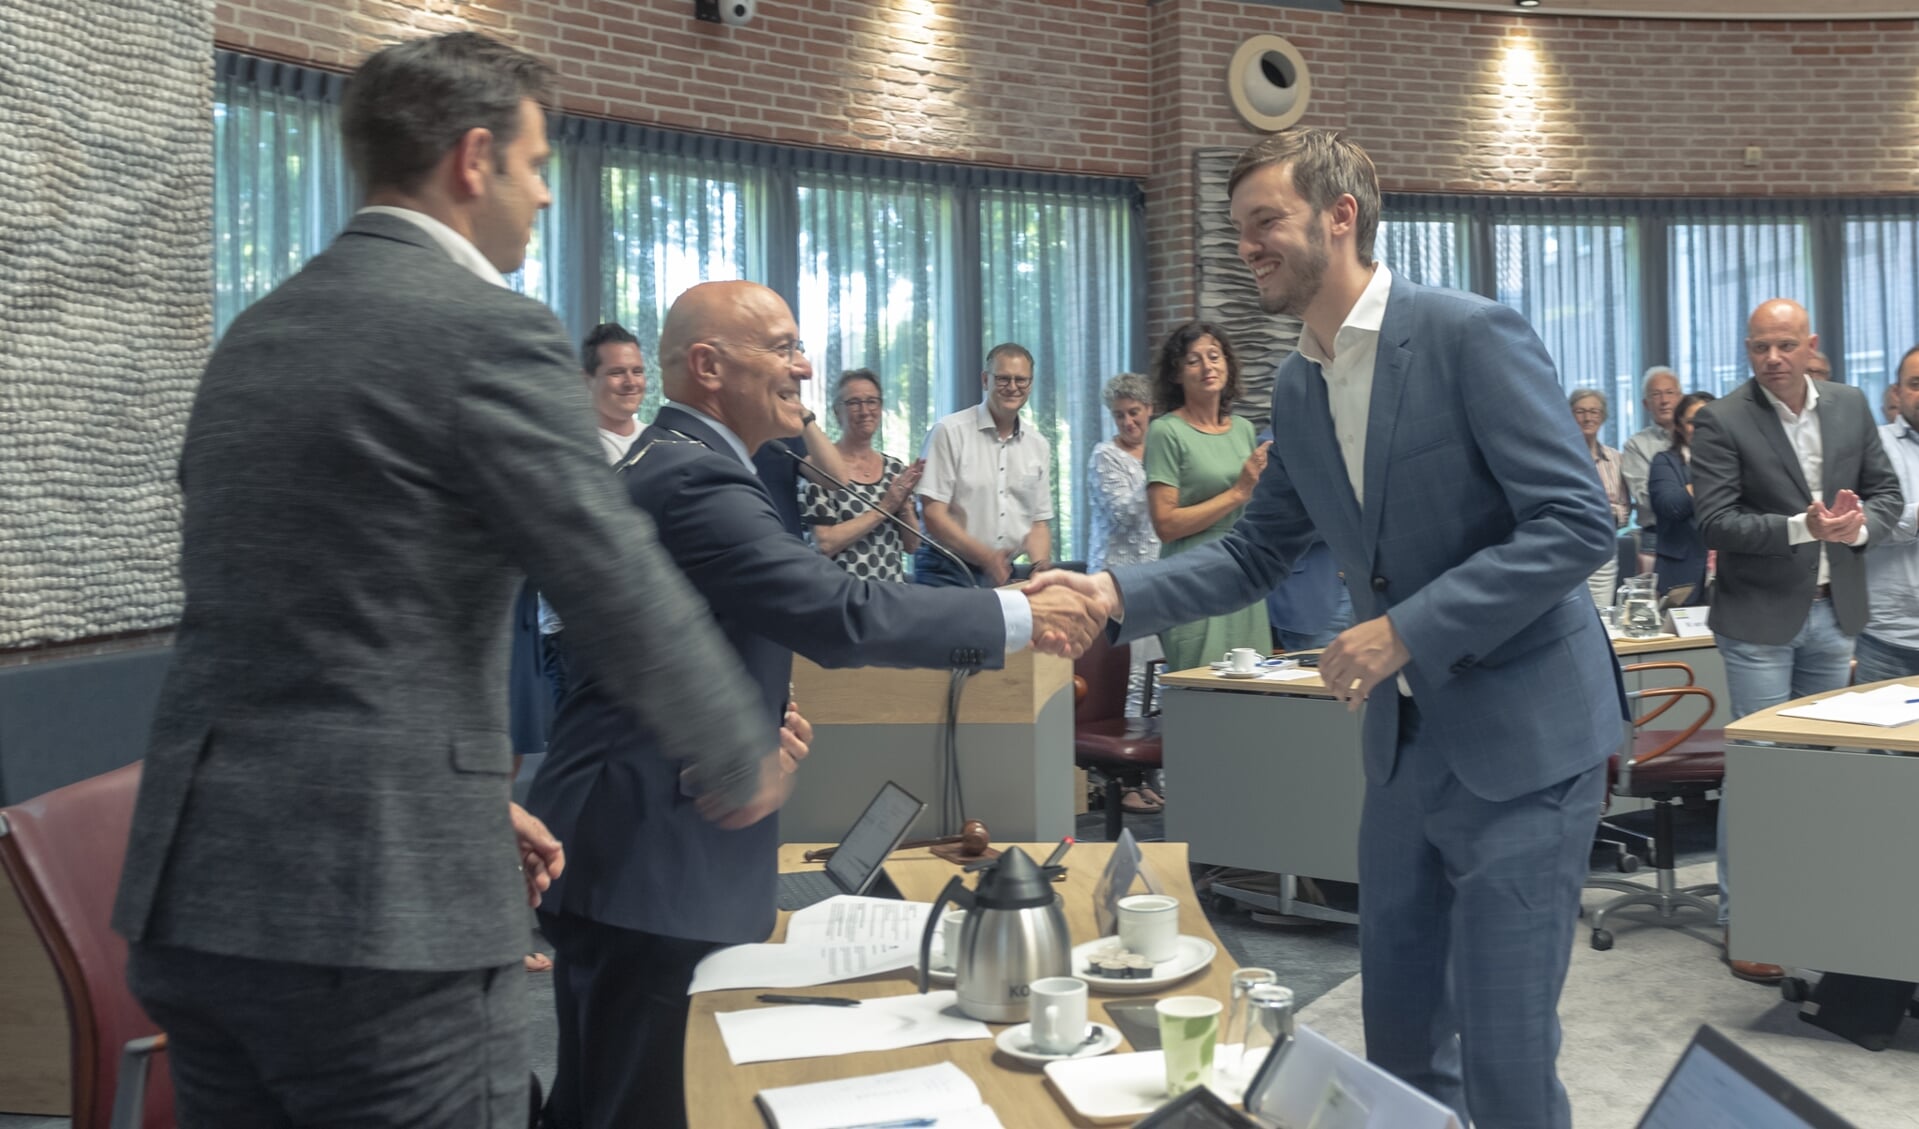 Burgemeester Van Rooij schudt Compagne de hand.